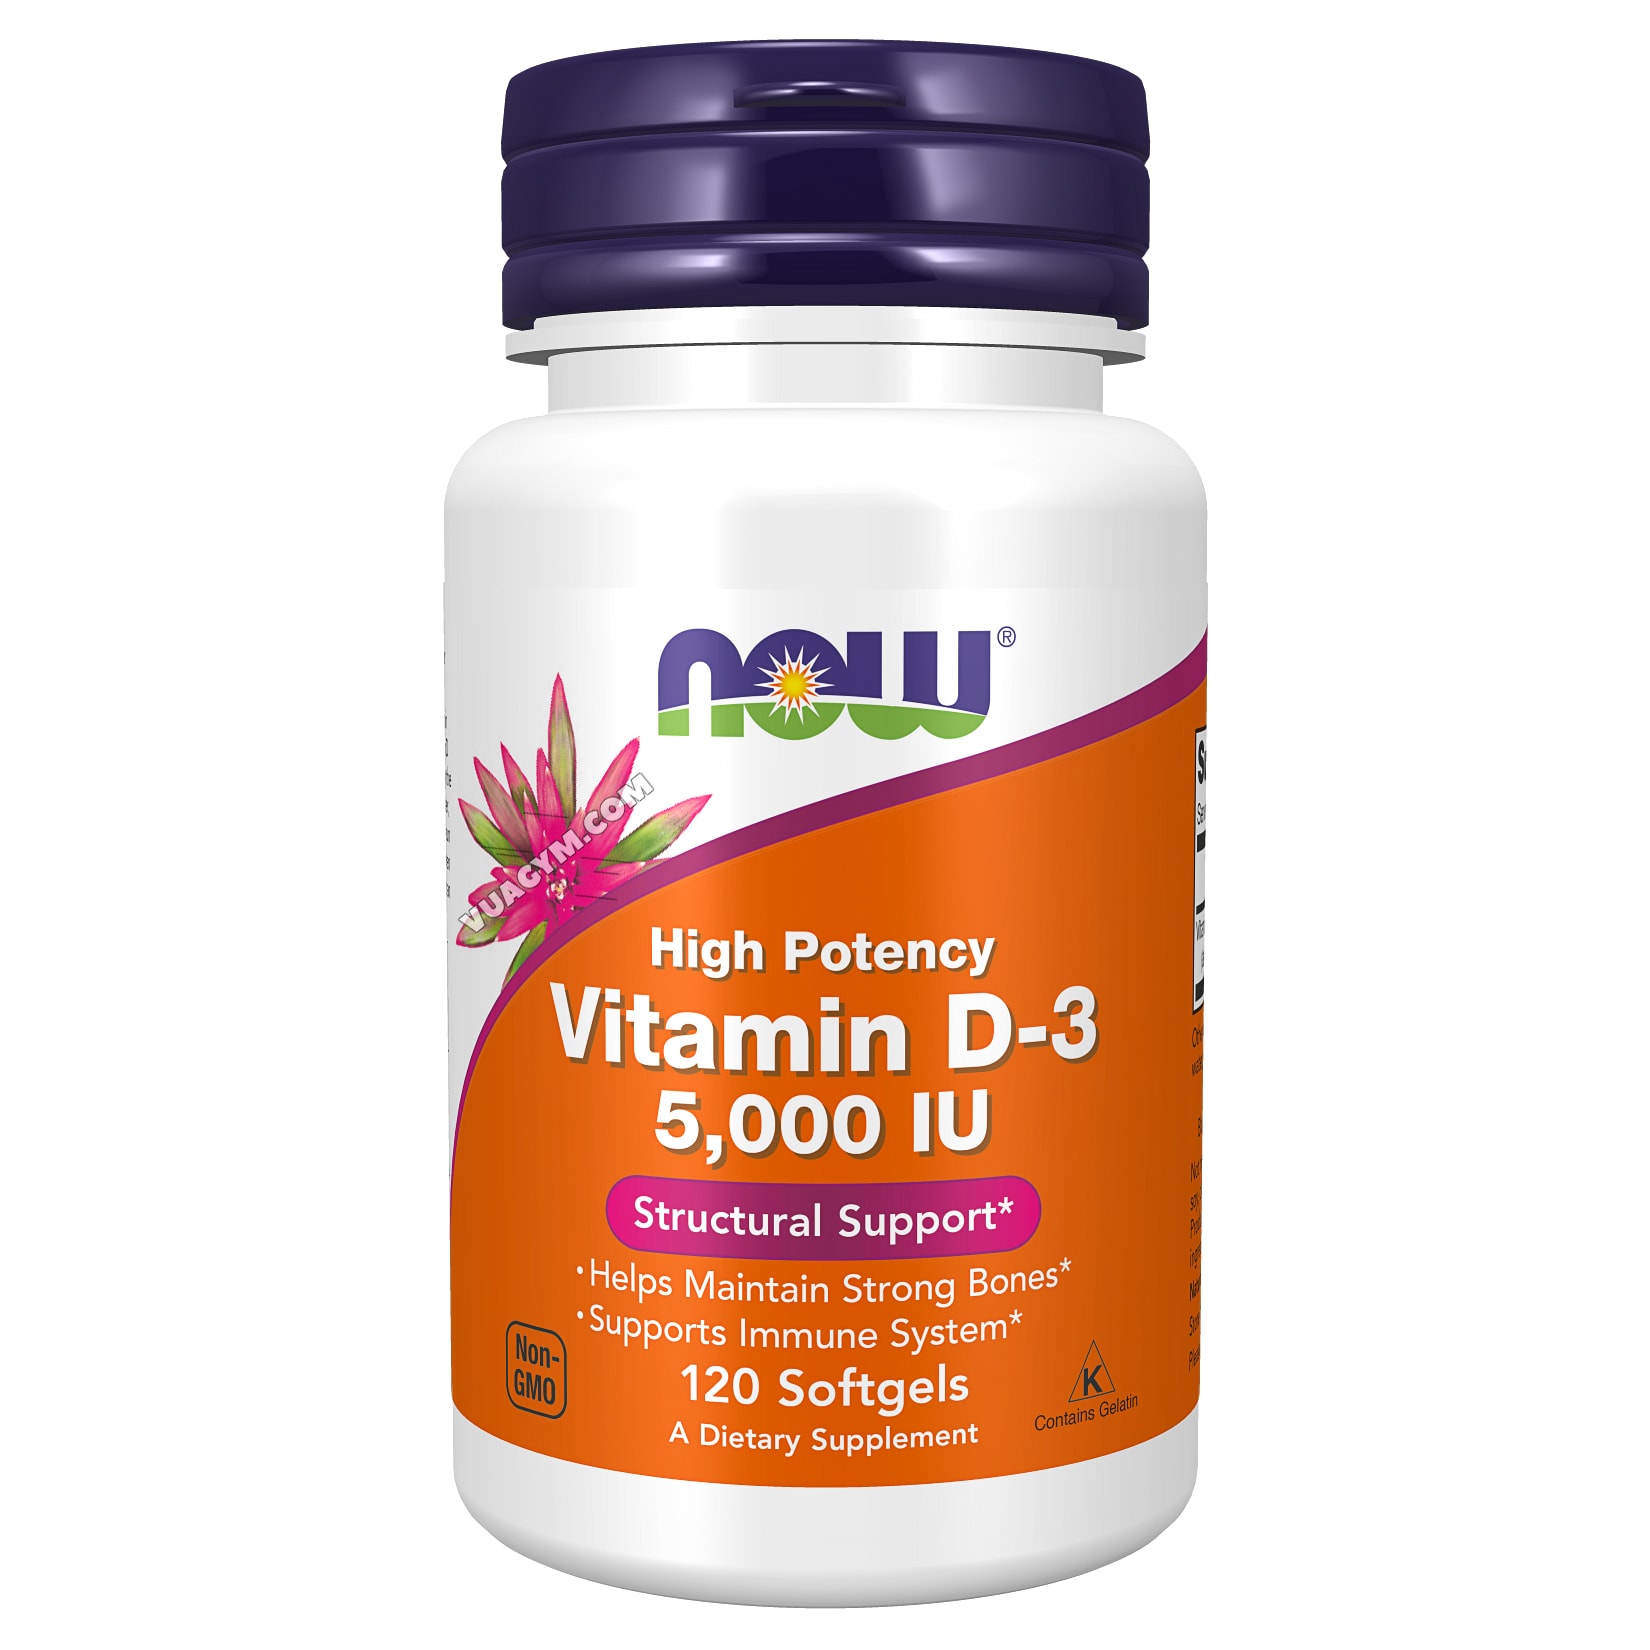 Giá thuốc Vitamin D 5000 IU là bao nhiêu?
